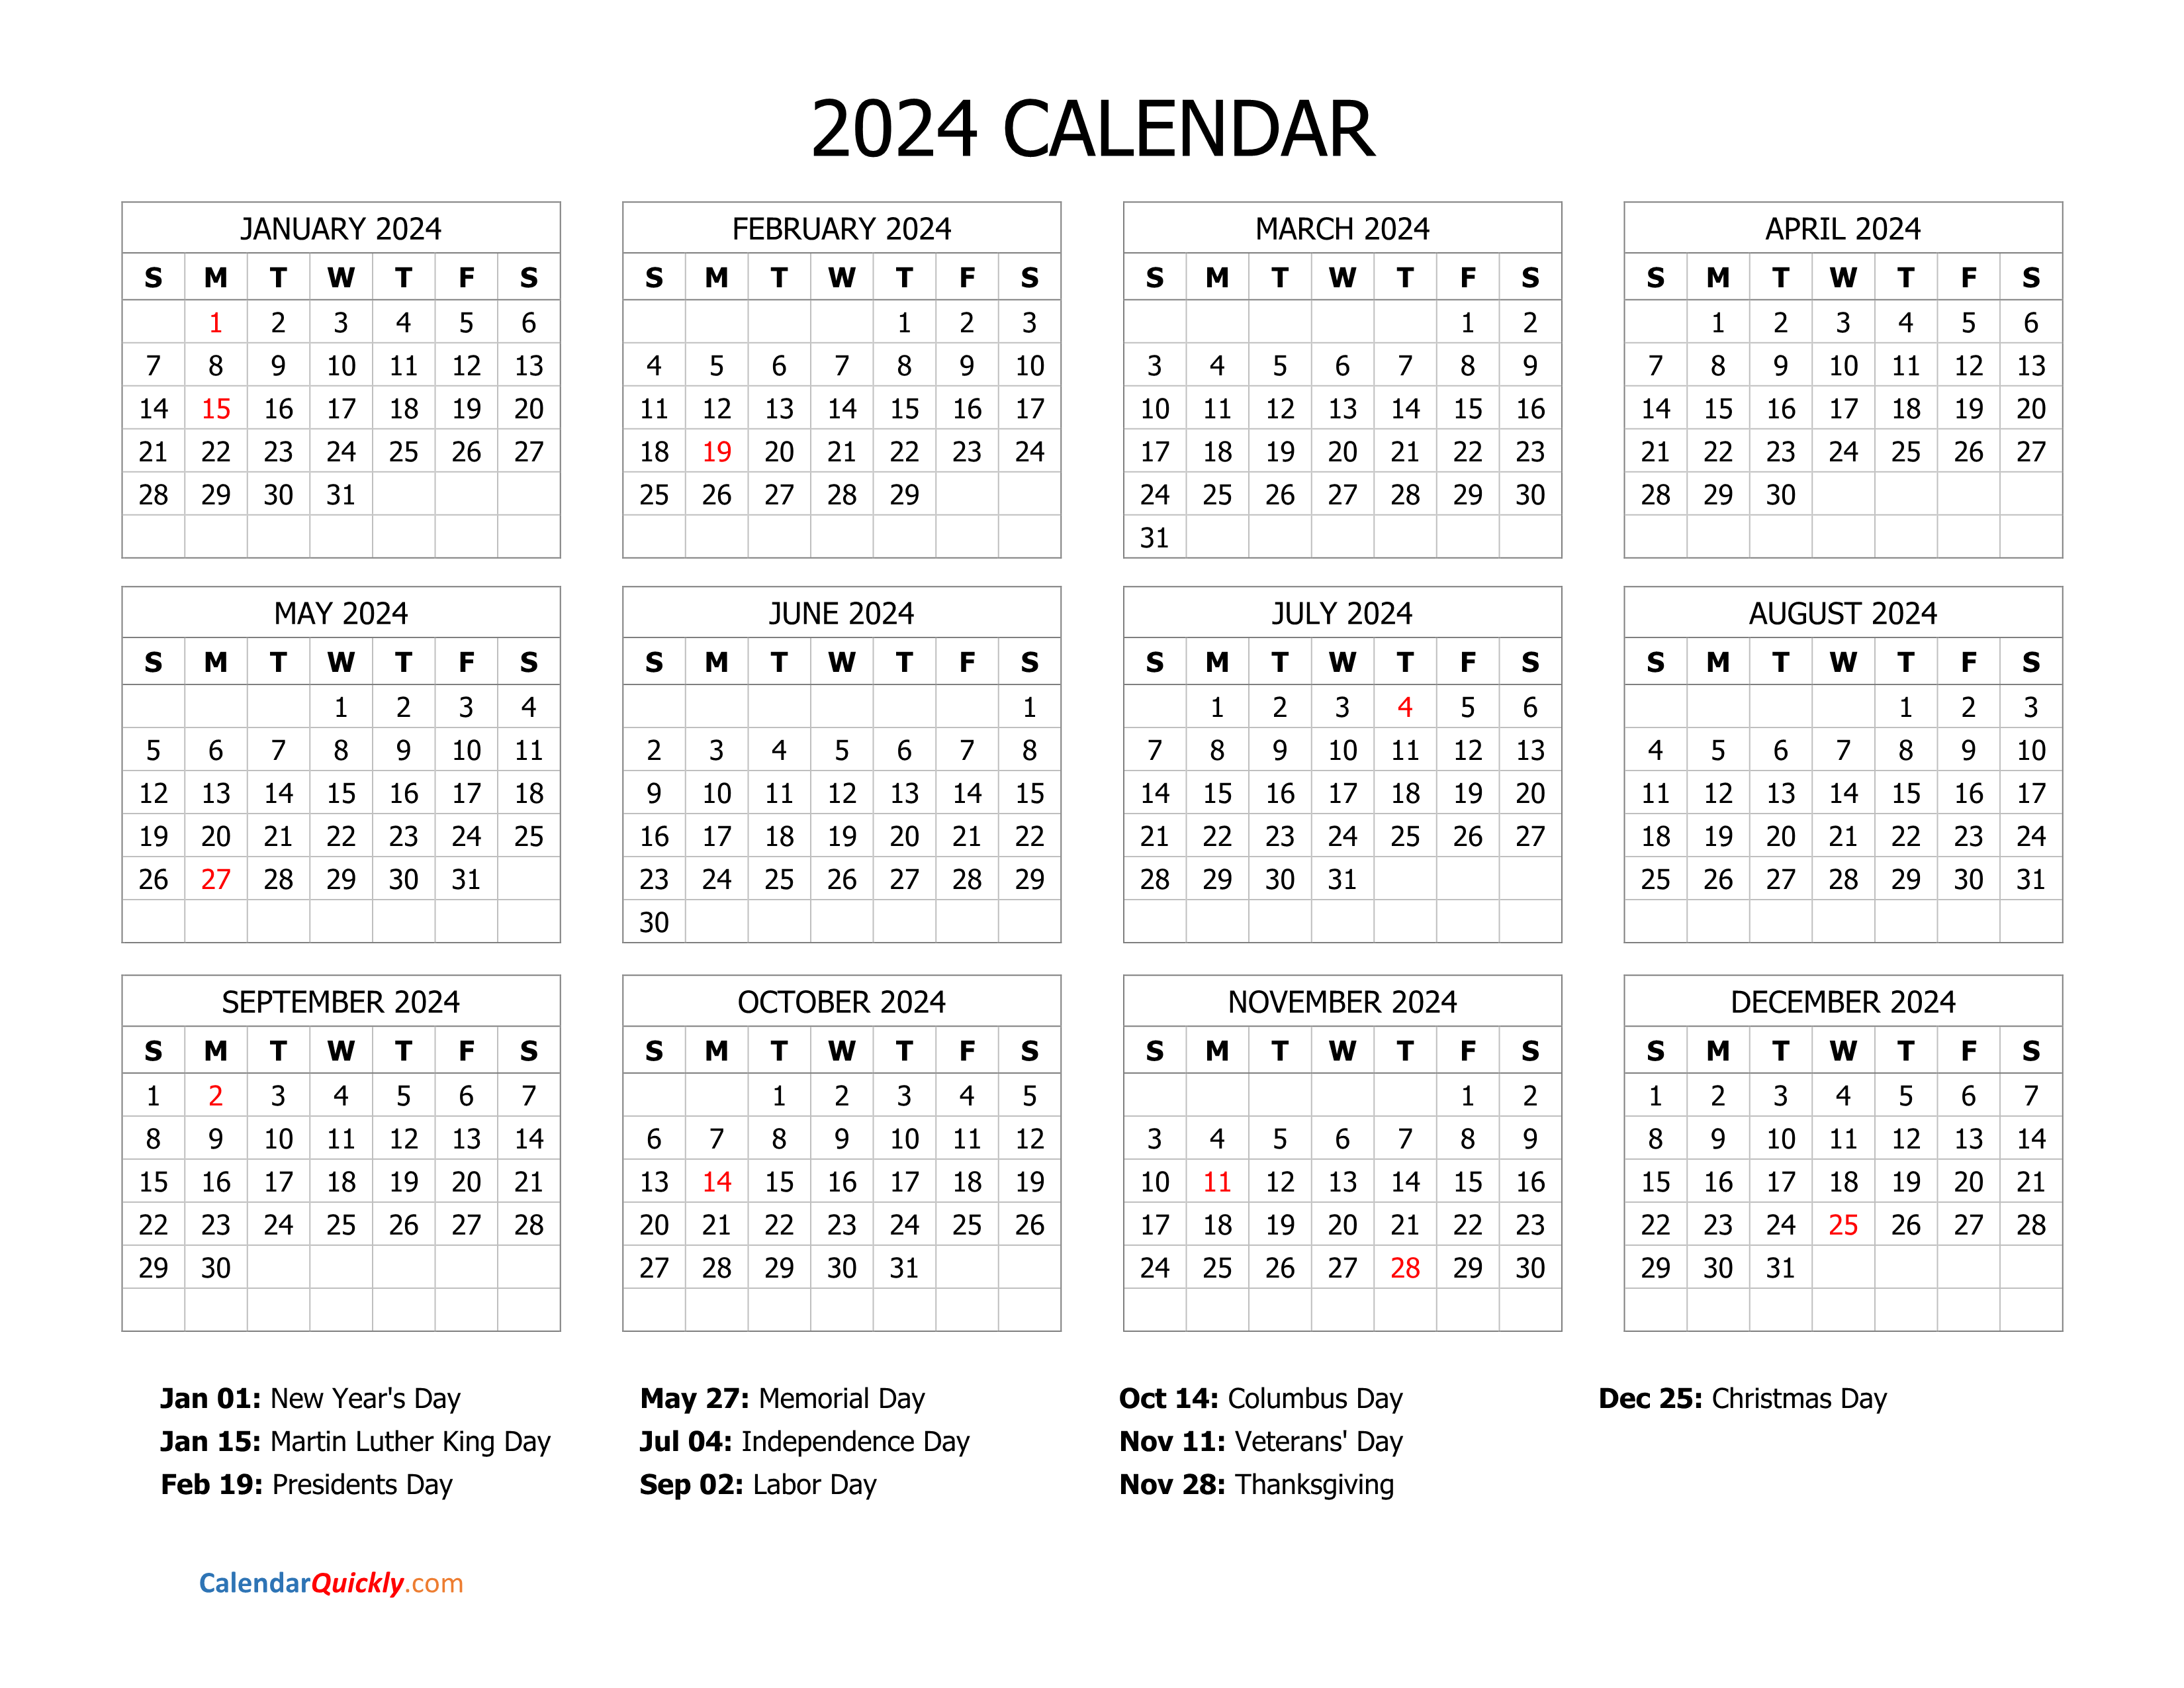 2024 Calendar Free Printable | Free Printable And Editable 2024 Calendar With Holidays